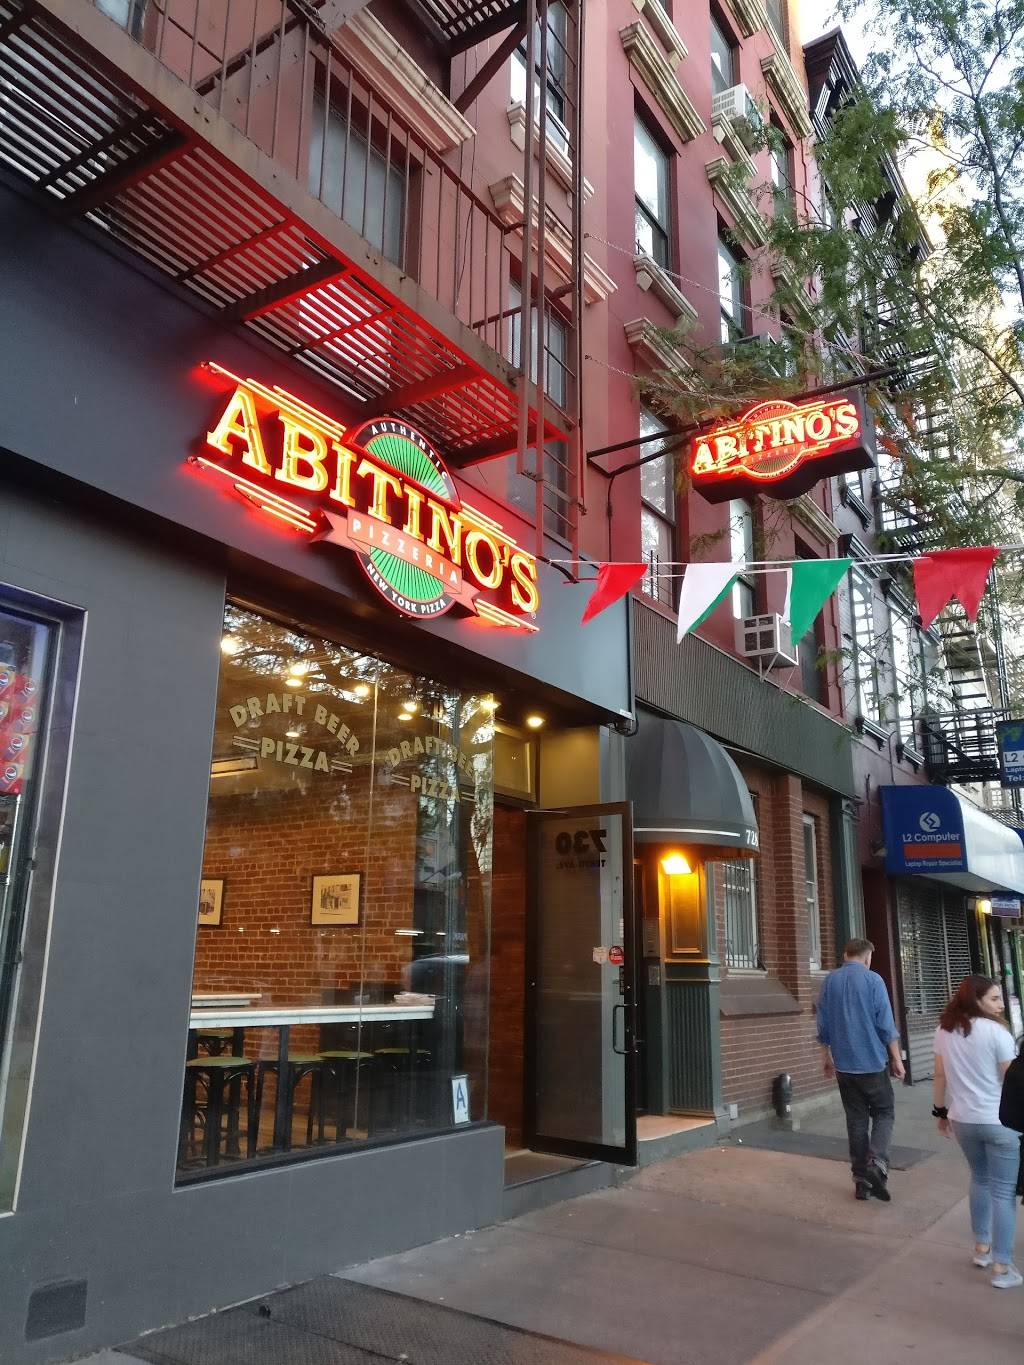 Abitinos | restaurant | 730 10th Ave, New York, NY 10019, USA | 2122451234 OR +1 212-245-1234